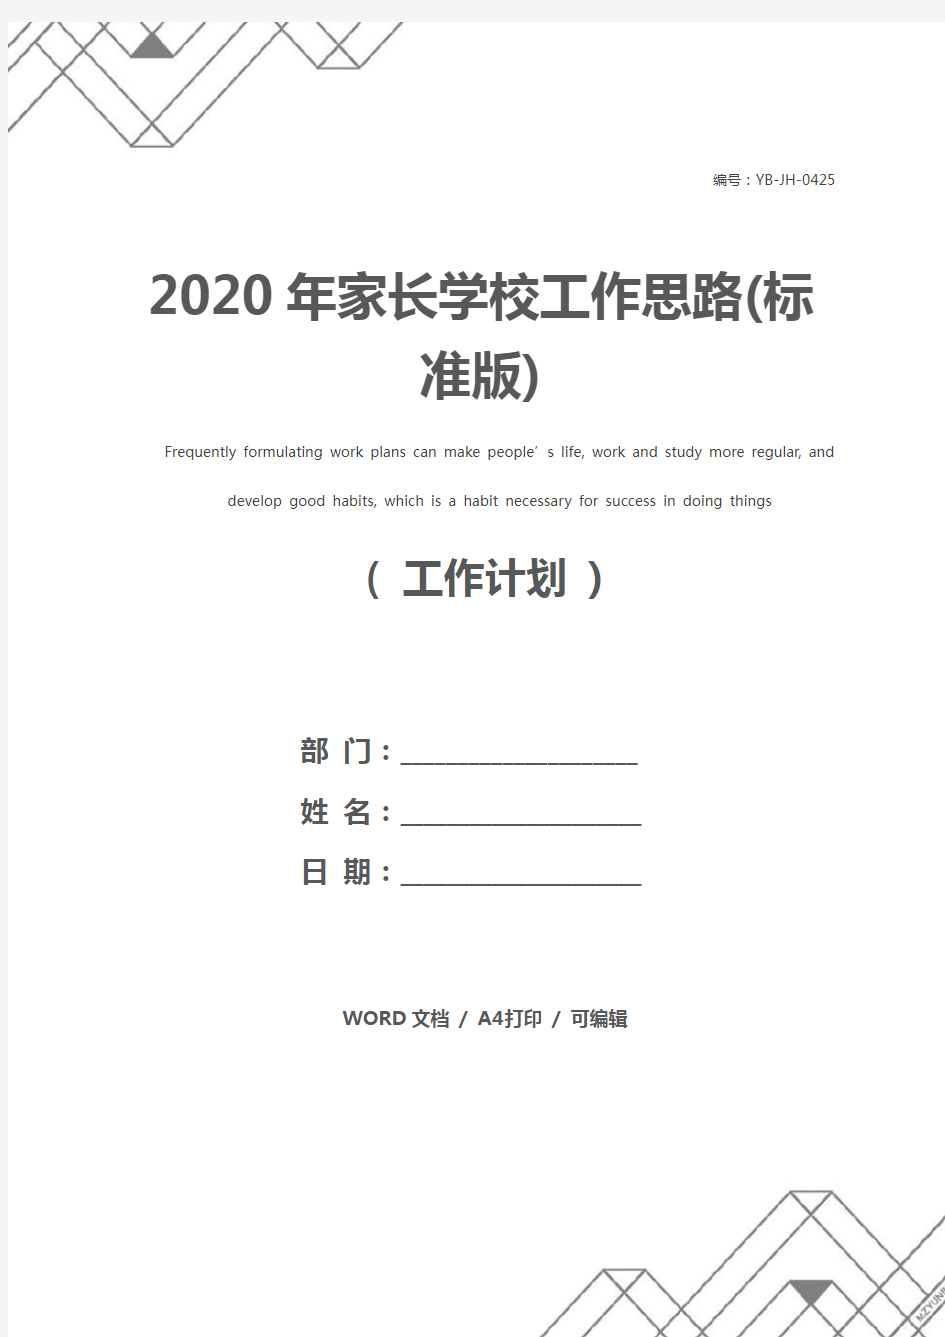 2020年家长学校工作思路(标准版)